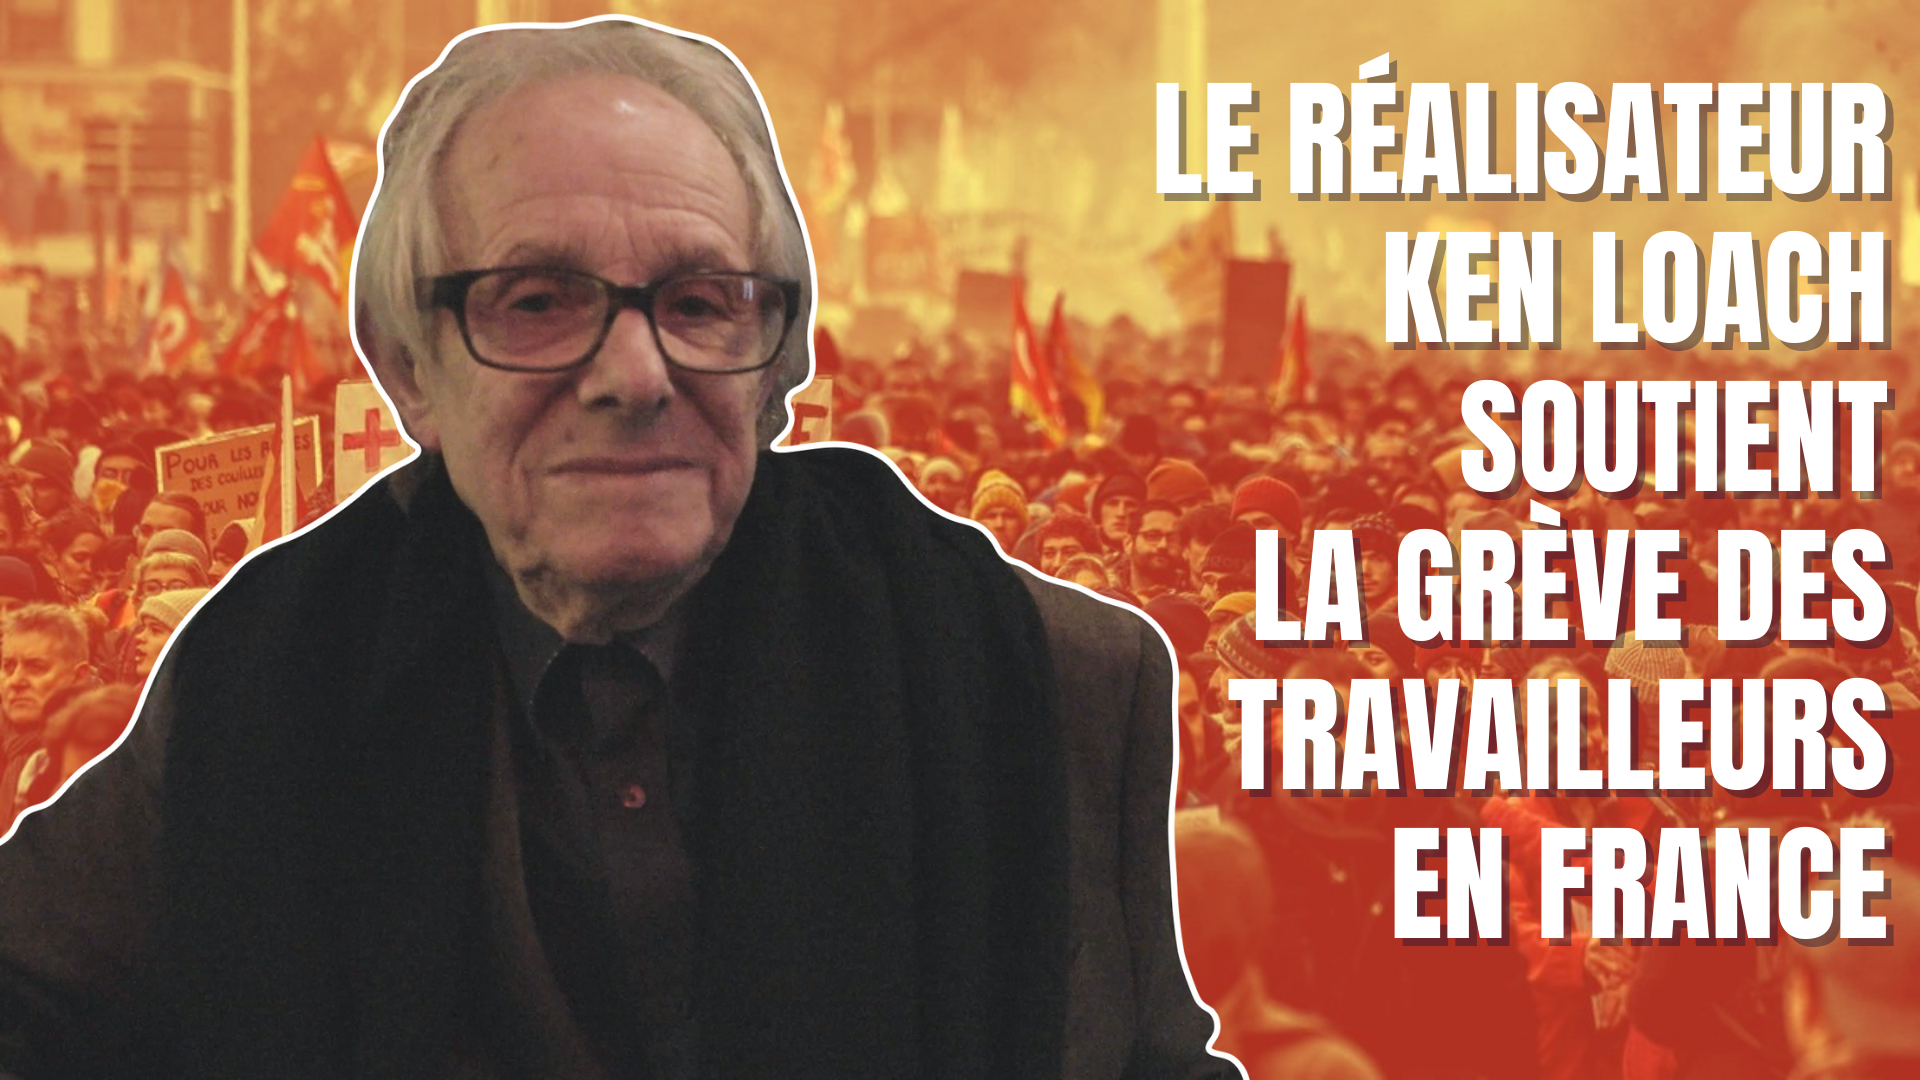 VIDEO. Le réalisateur Ken Loach soutient la grève des travailleurs en France contre la réforme des retraites 